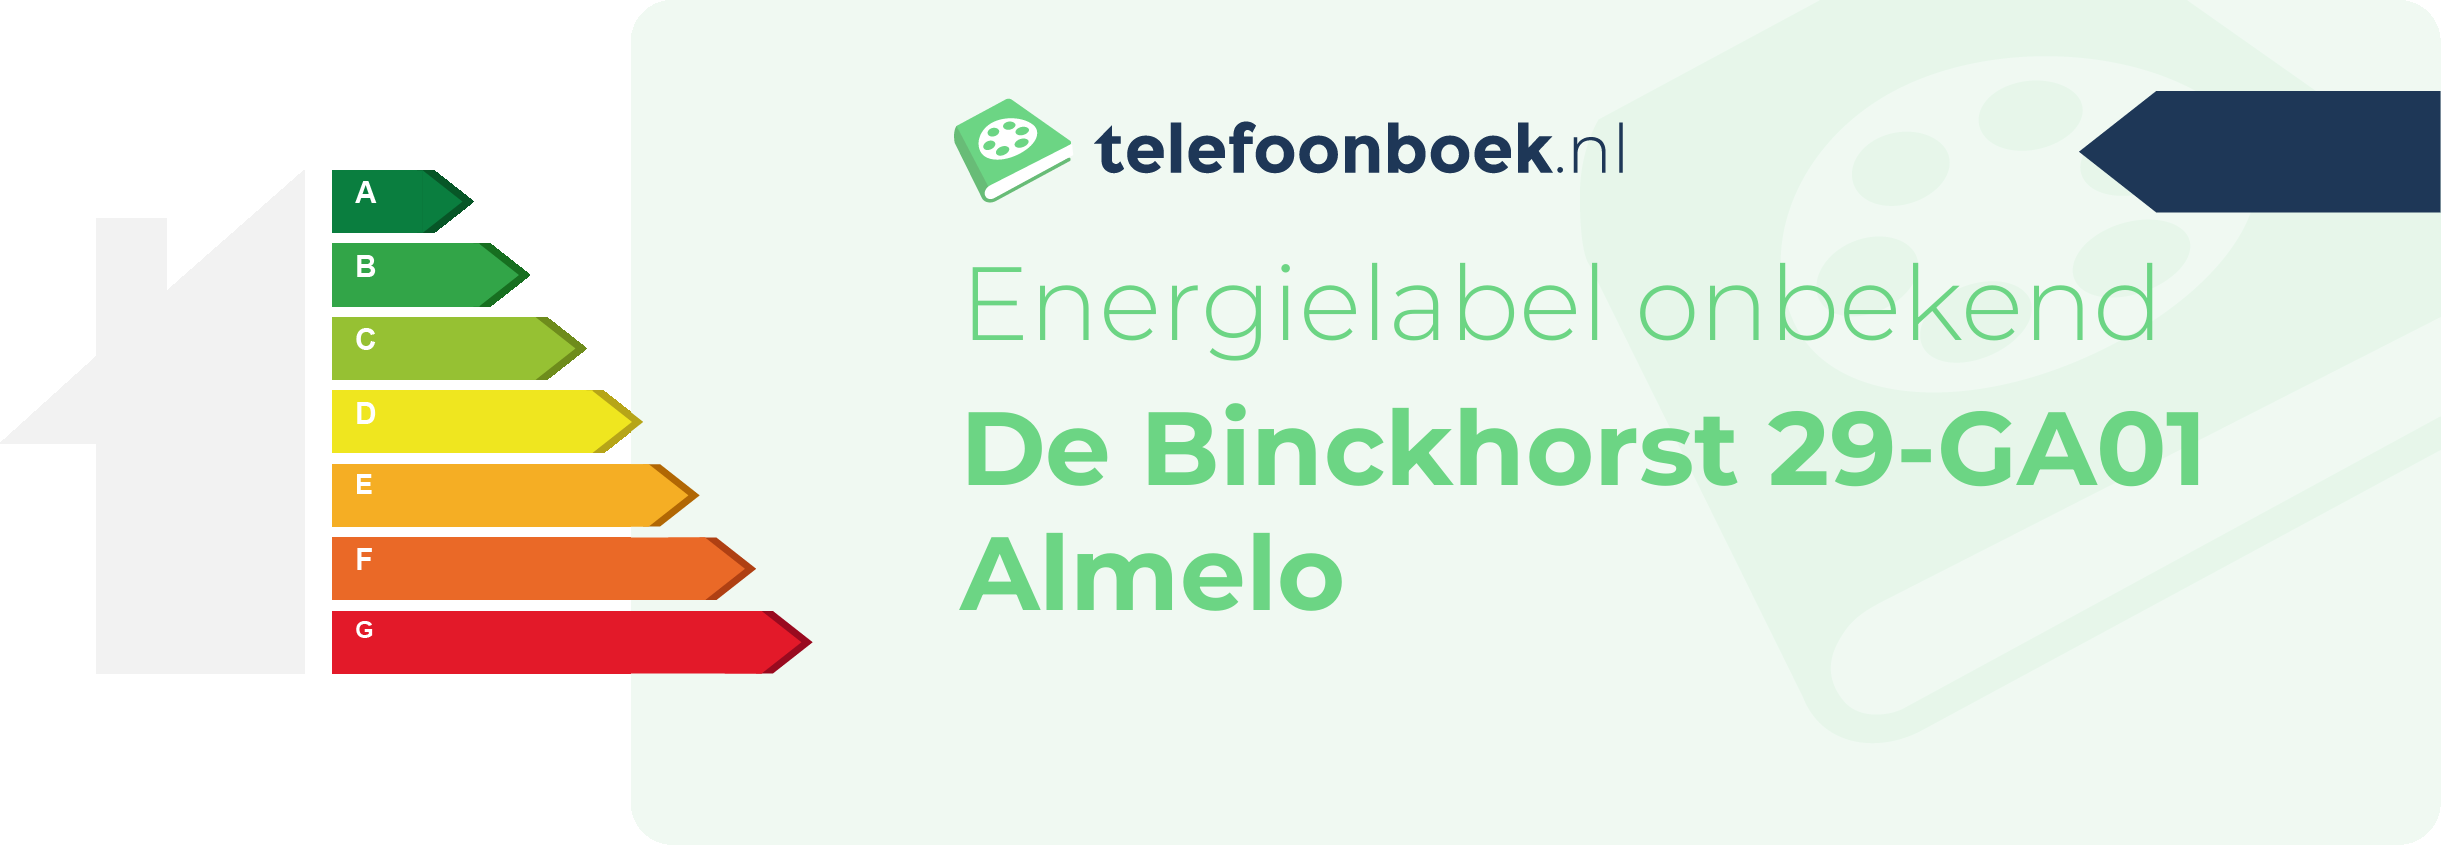 Energielabel De Binckhorst 29-GA01 Almelo